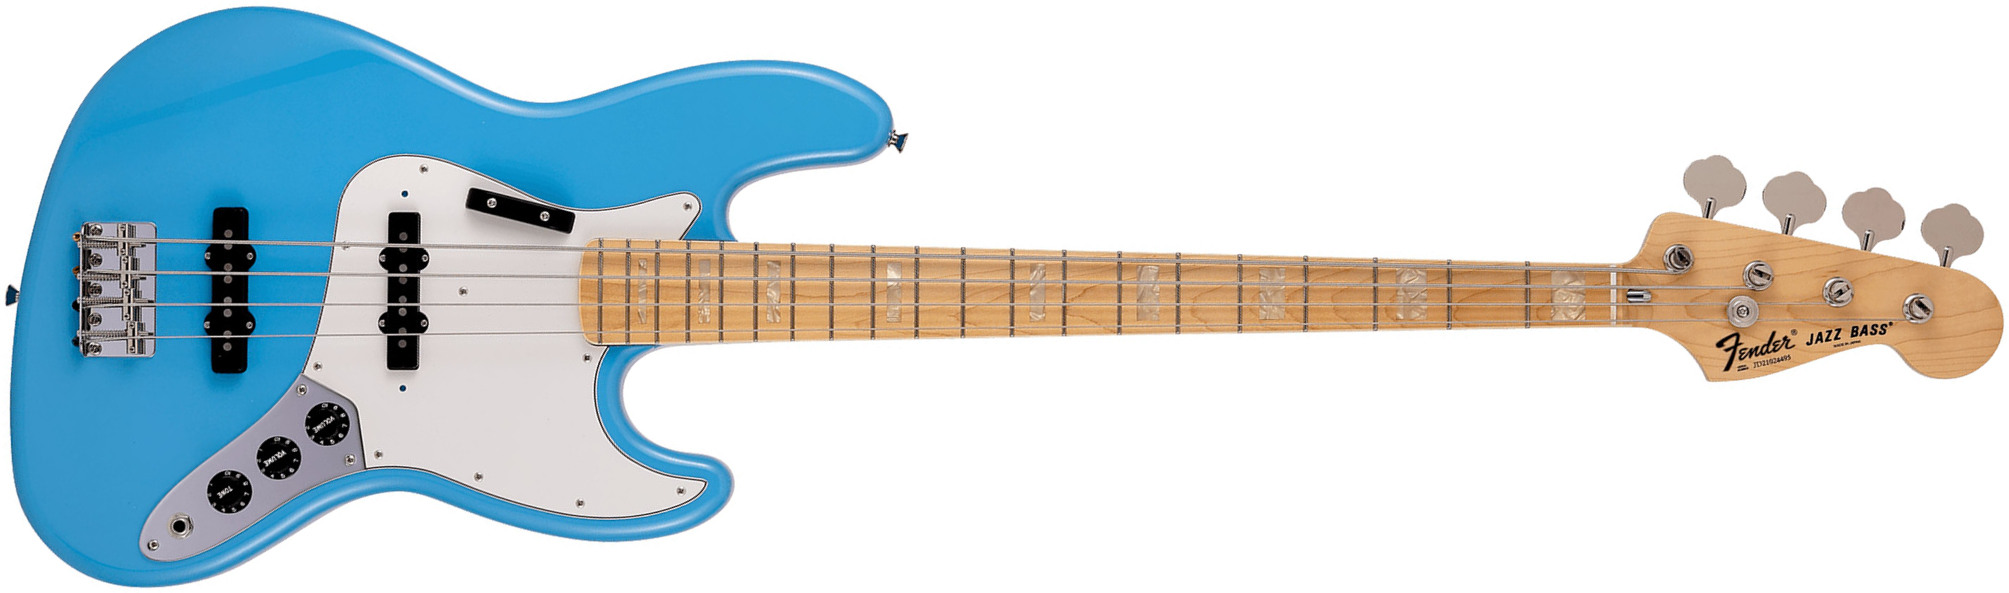 Fender Jazz Bass International Color Ltd Jap Mn - Maui Blue - Bajo eléctrico de cuerpo sólido - Main picture